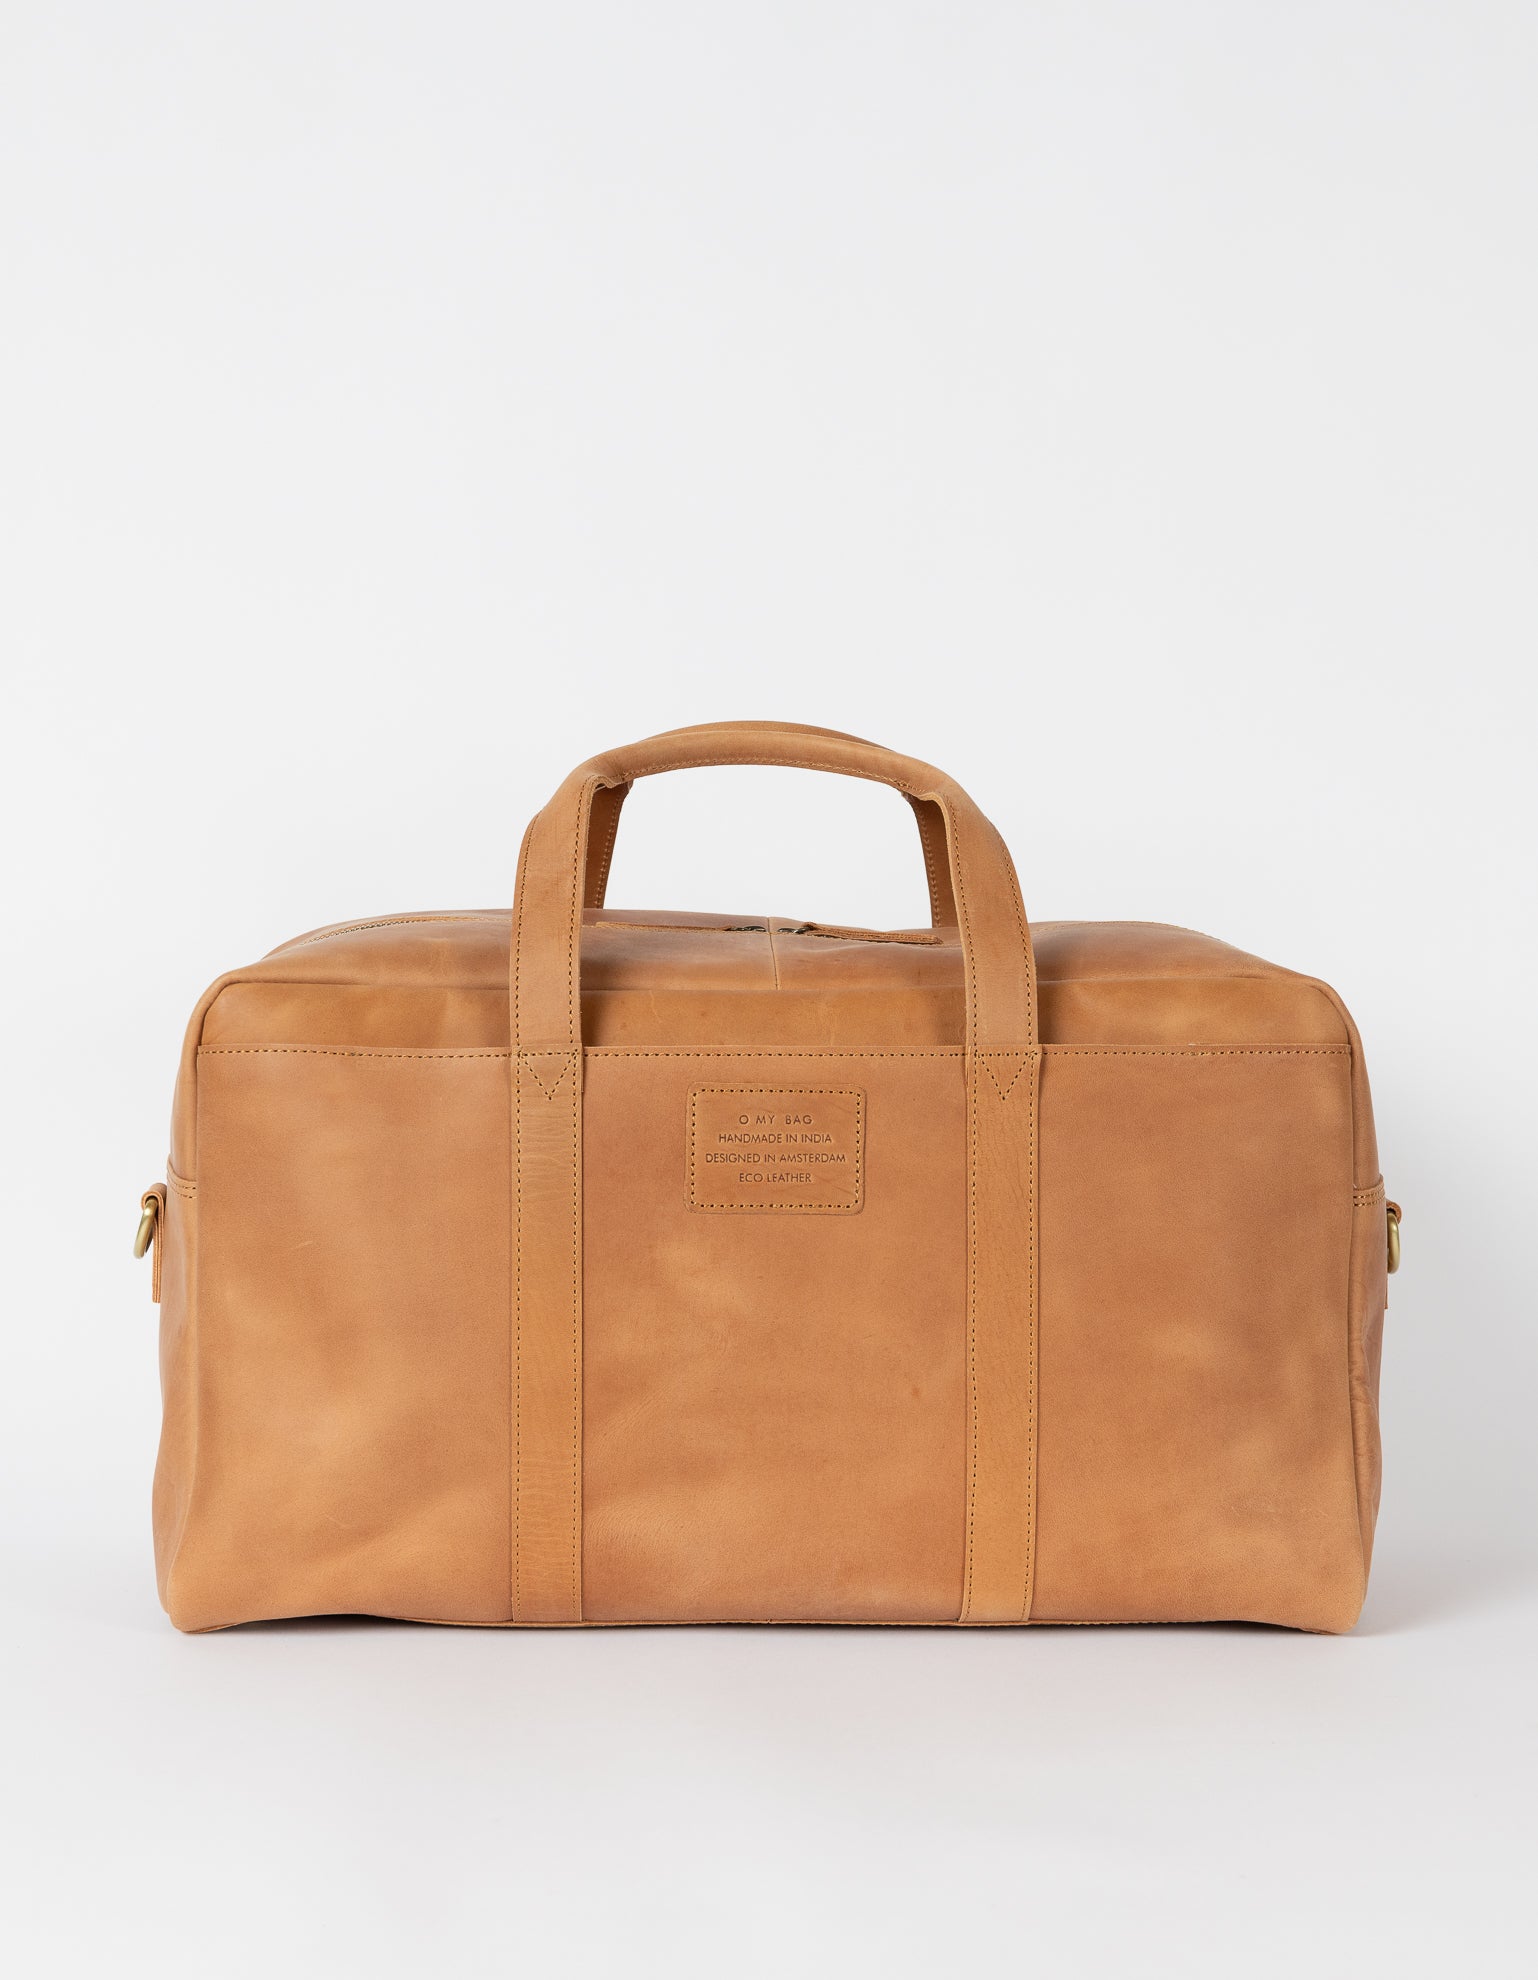 LEATHER KENSINGTON X BAG Camel Leather Shoulder Bag by KURT GEIGER LONDON